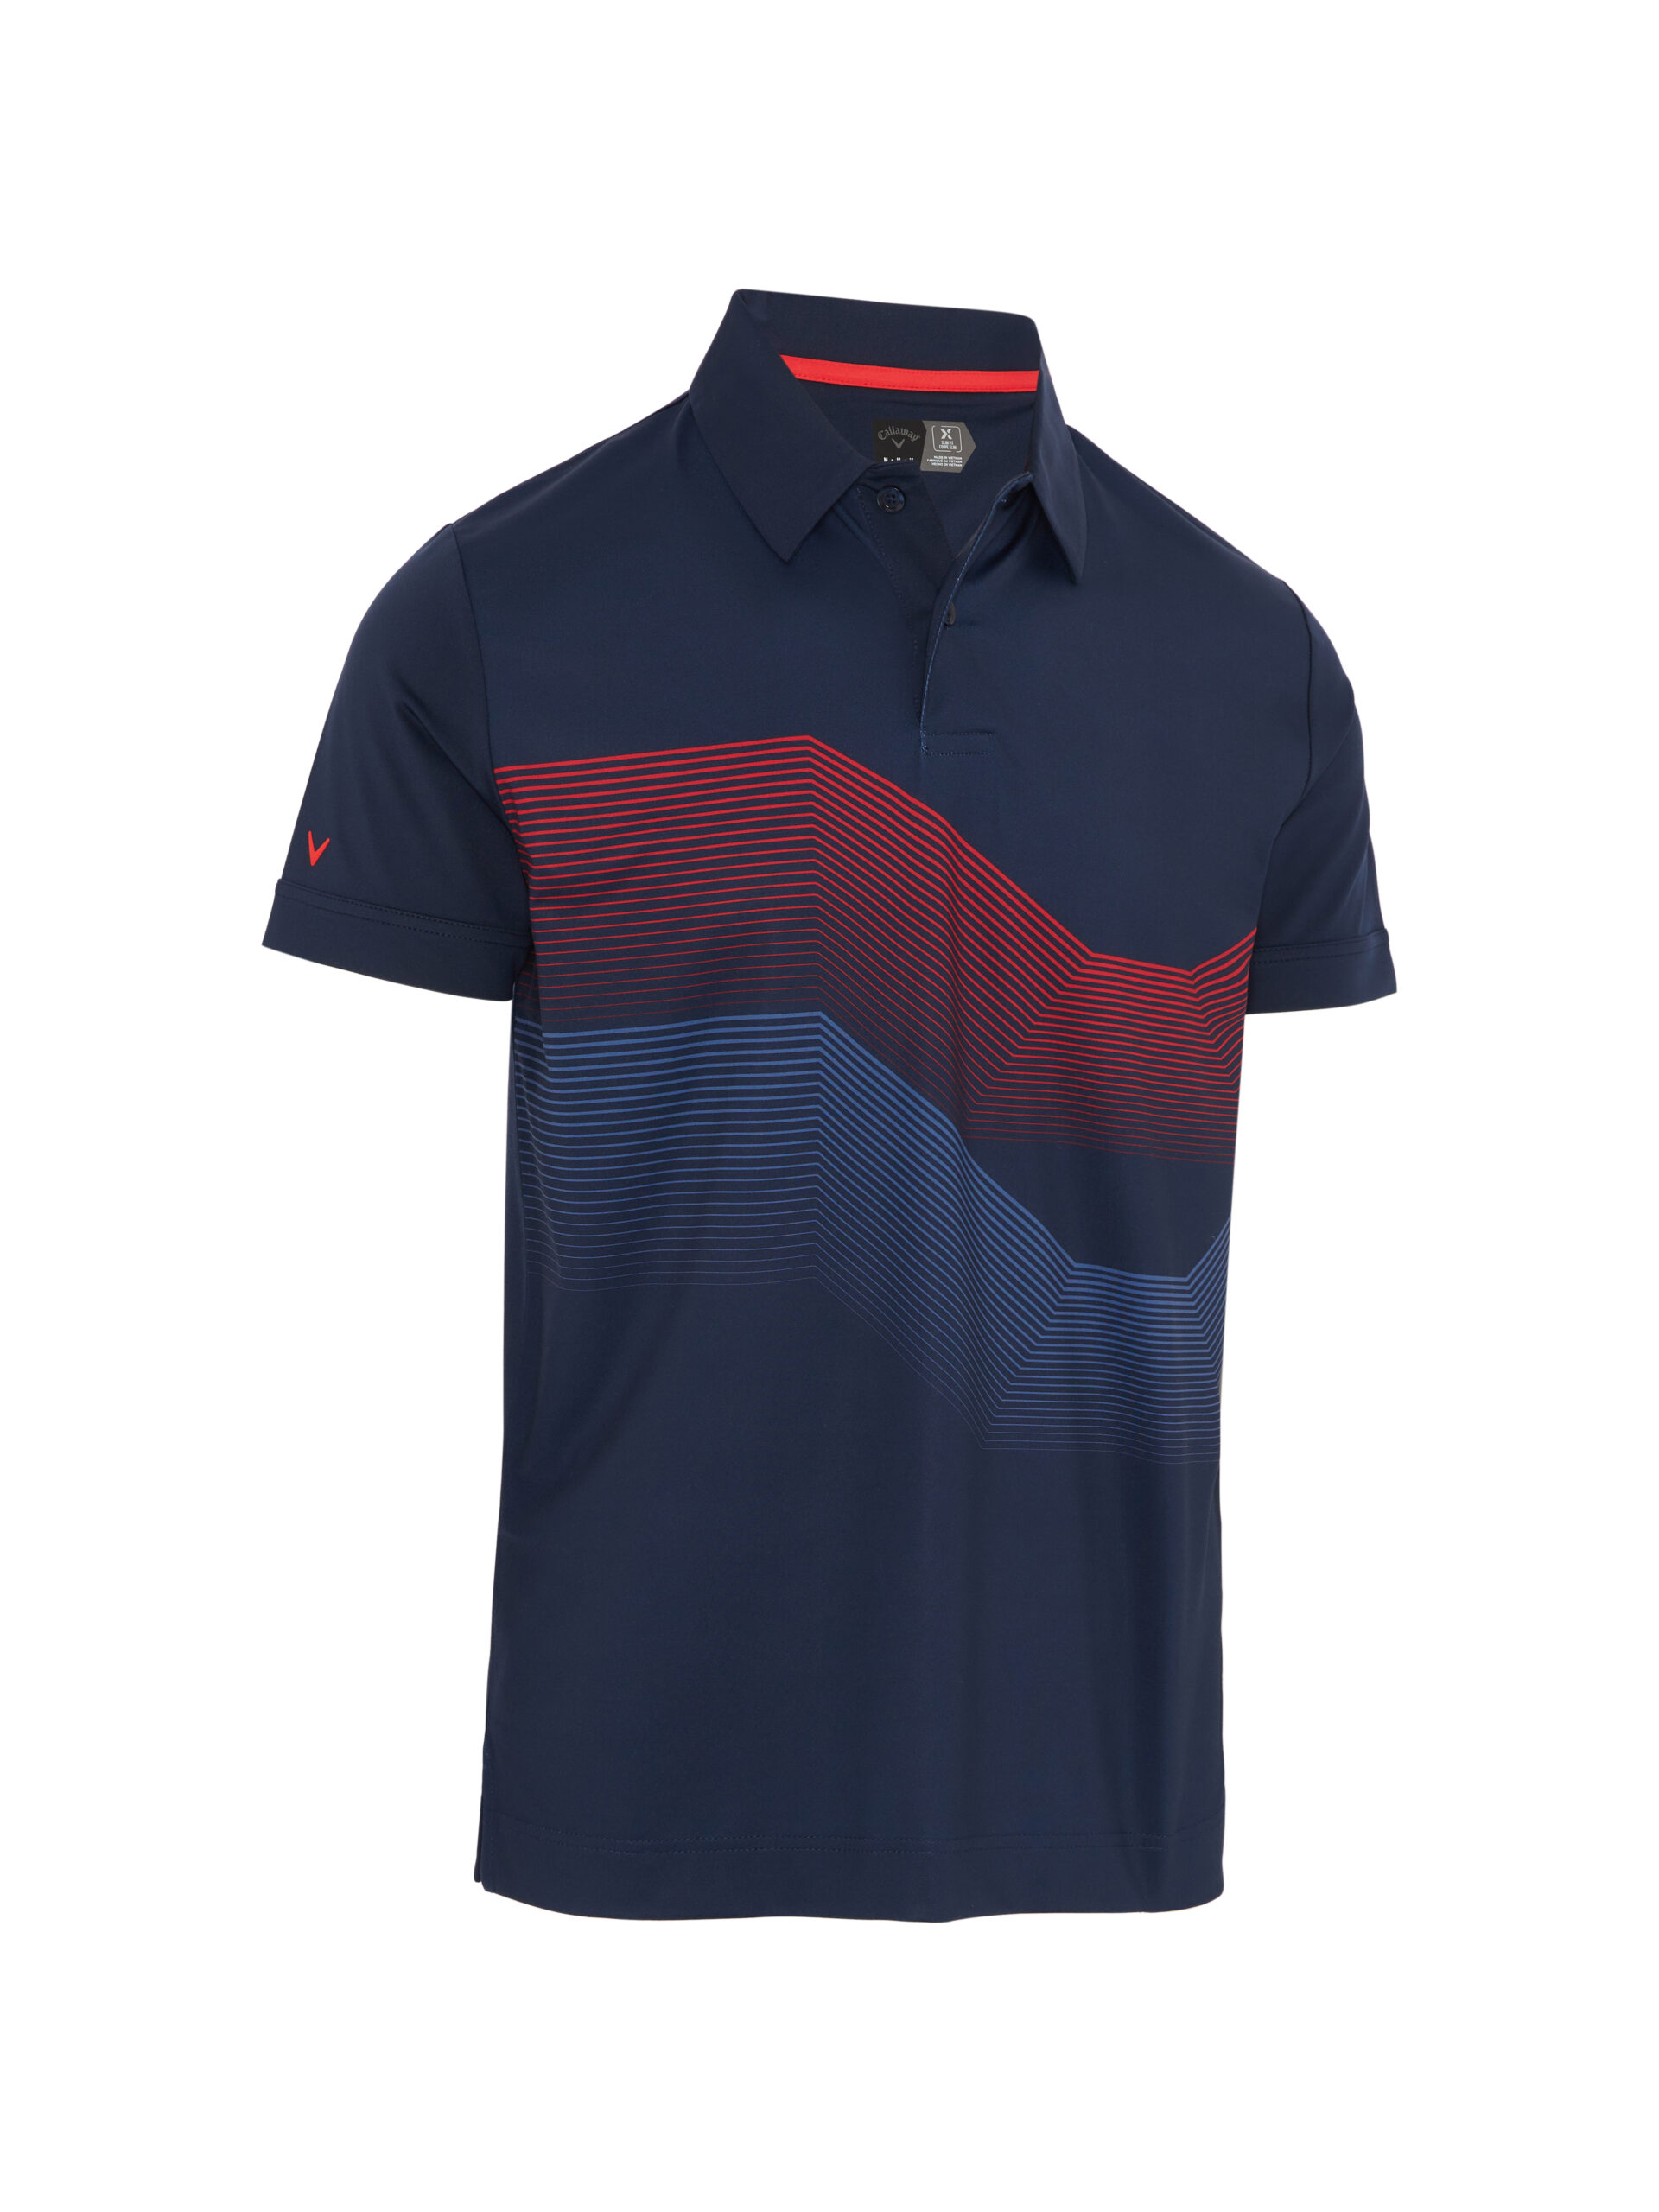 Callaway Linear Chev Print pánské golfové triko, tmavě modré, vel. XL